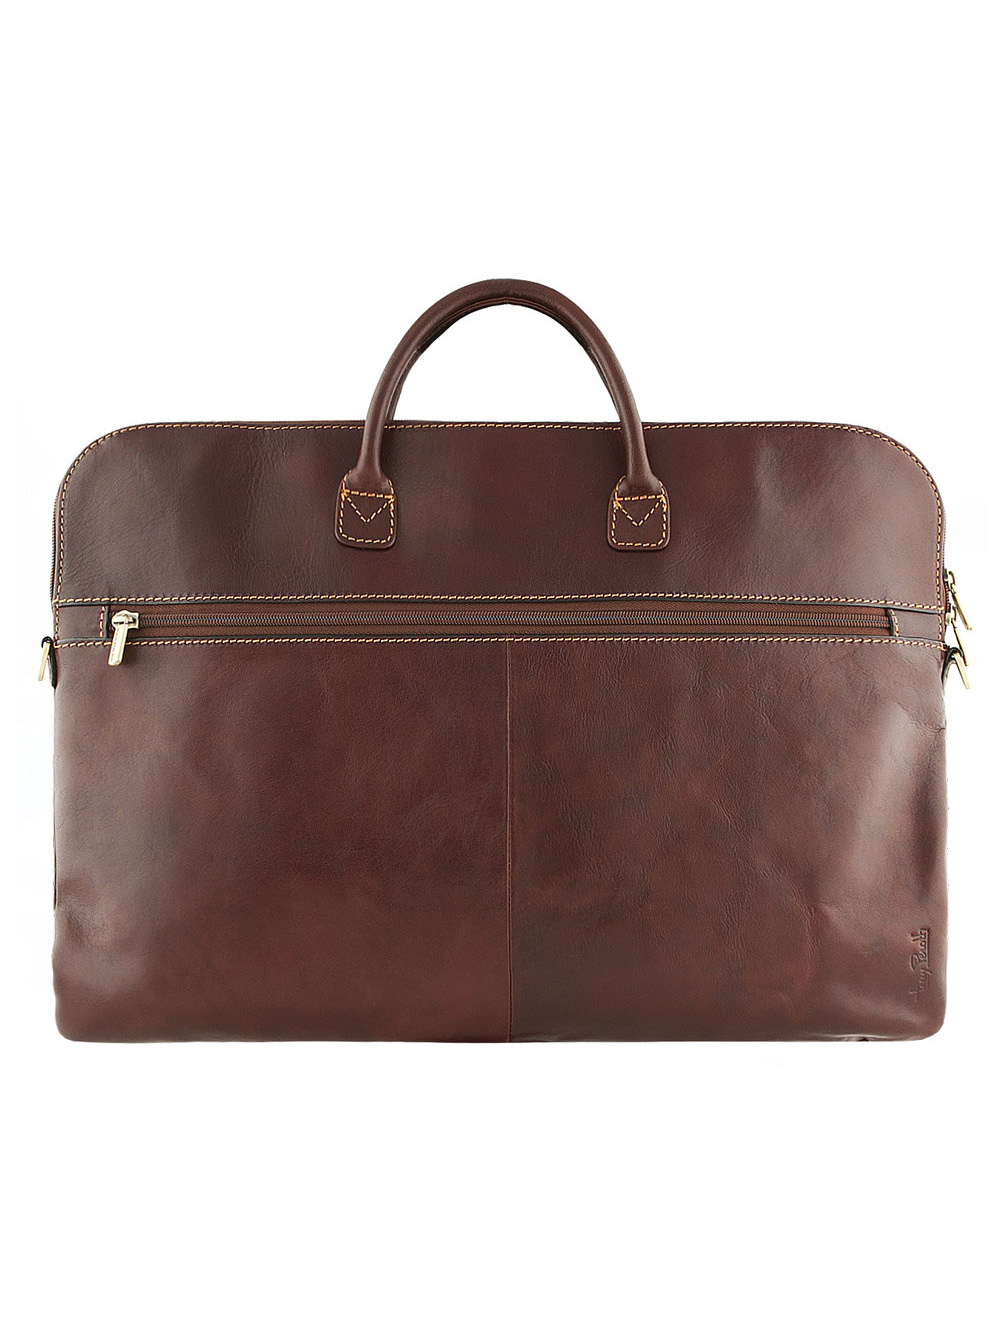 Фото Компактная кожаная сумка формата А4 коричневого цвета Деловые сумки (А4)